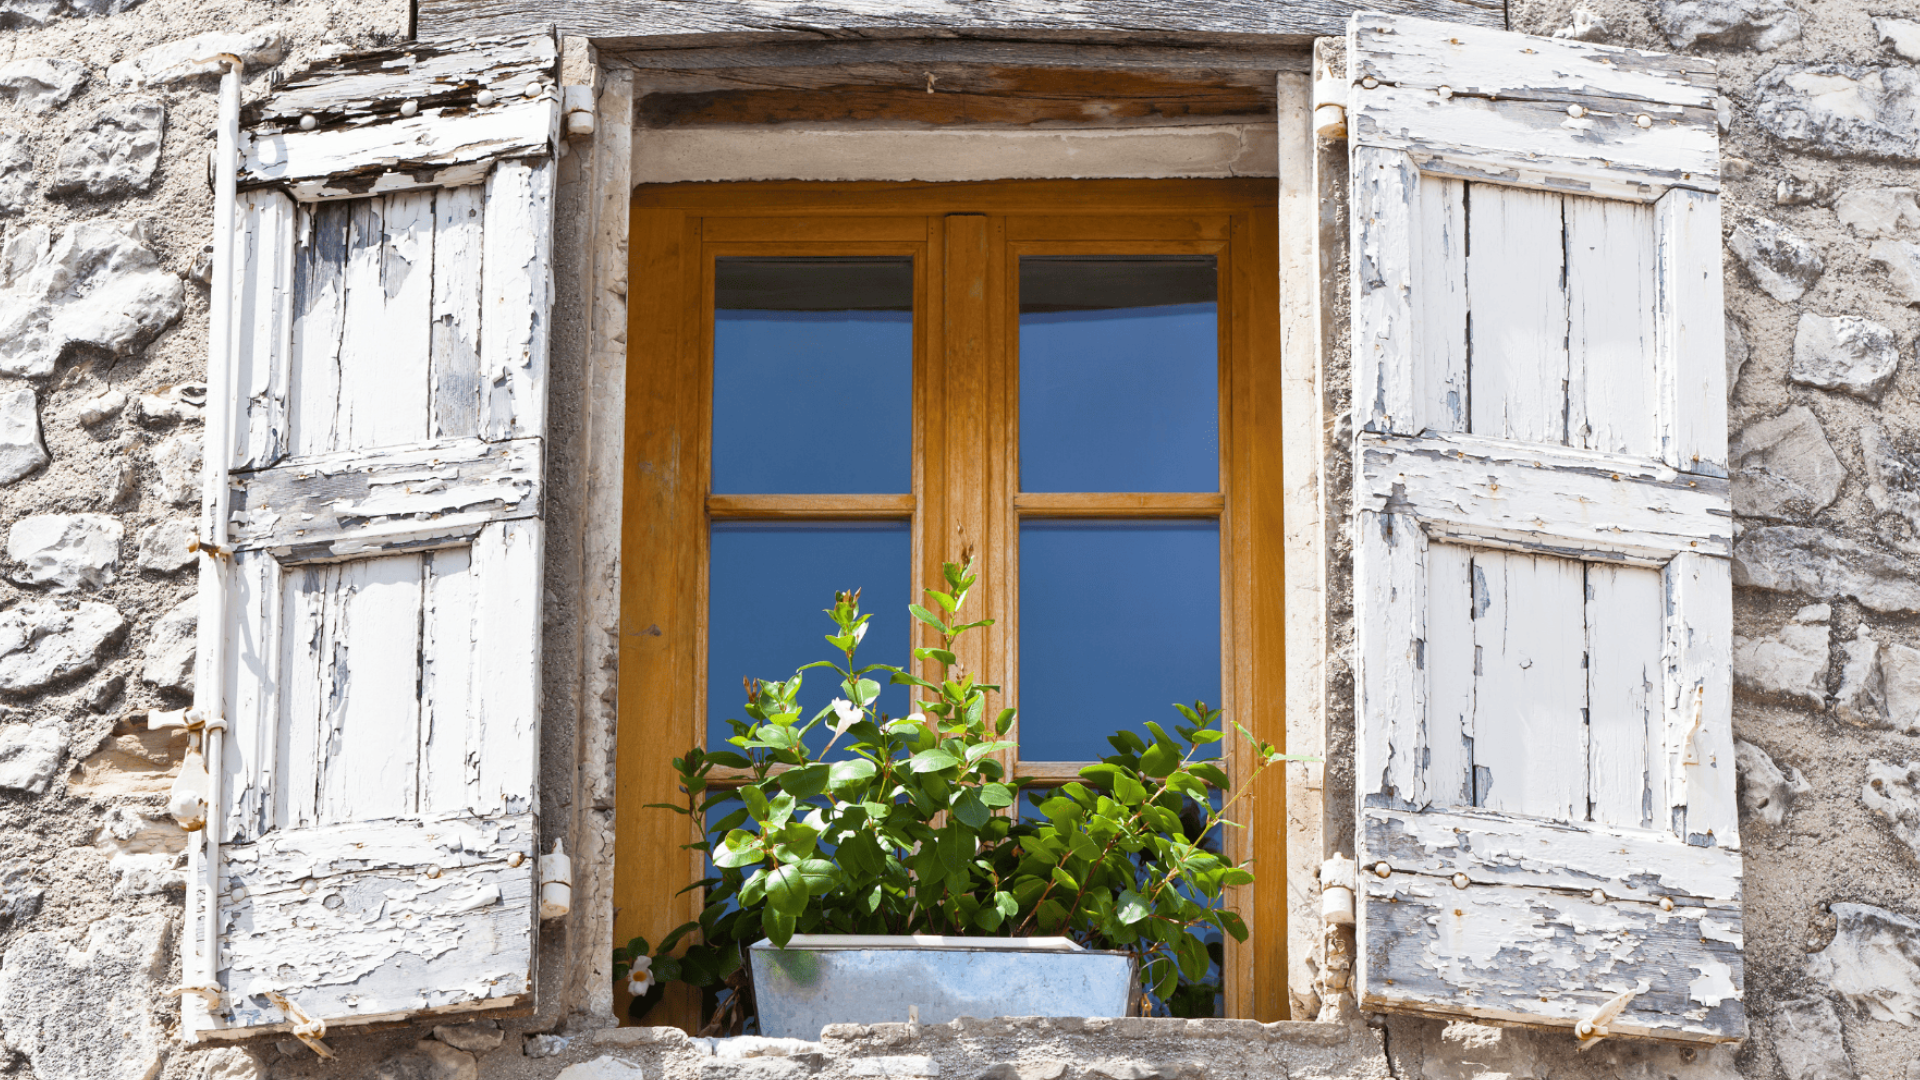 Choisir des fenêtres performantes pour l'isolation thermique